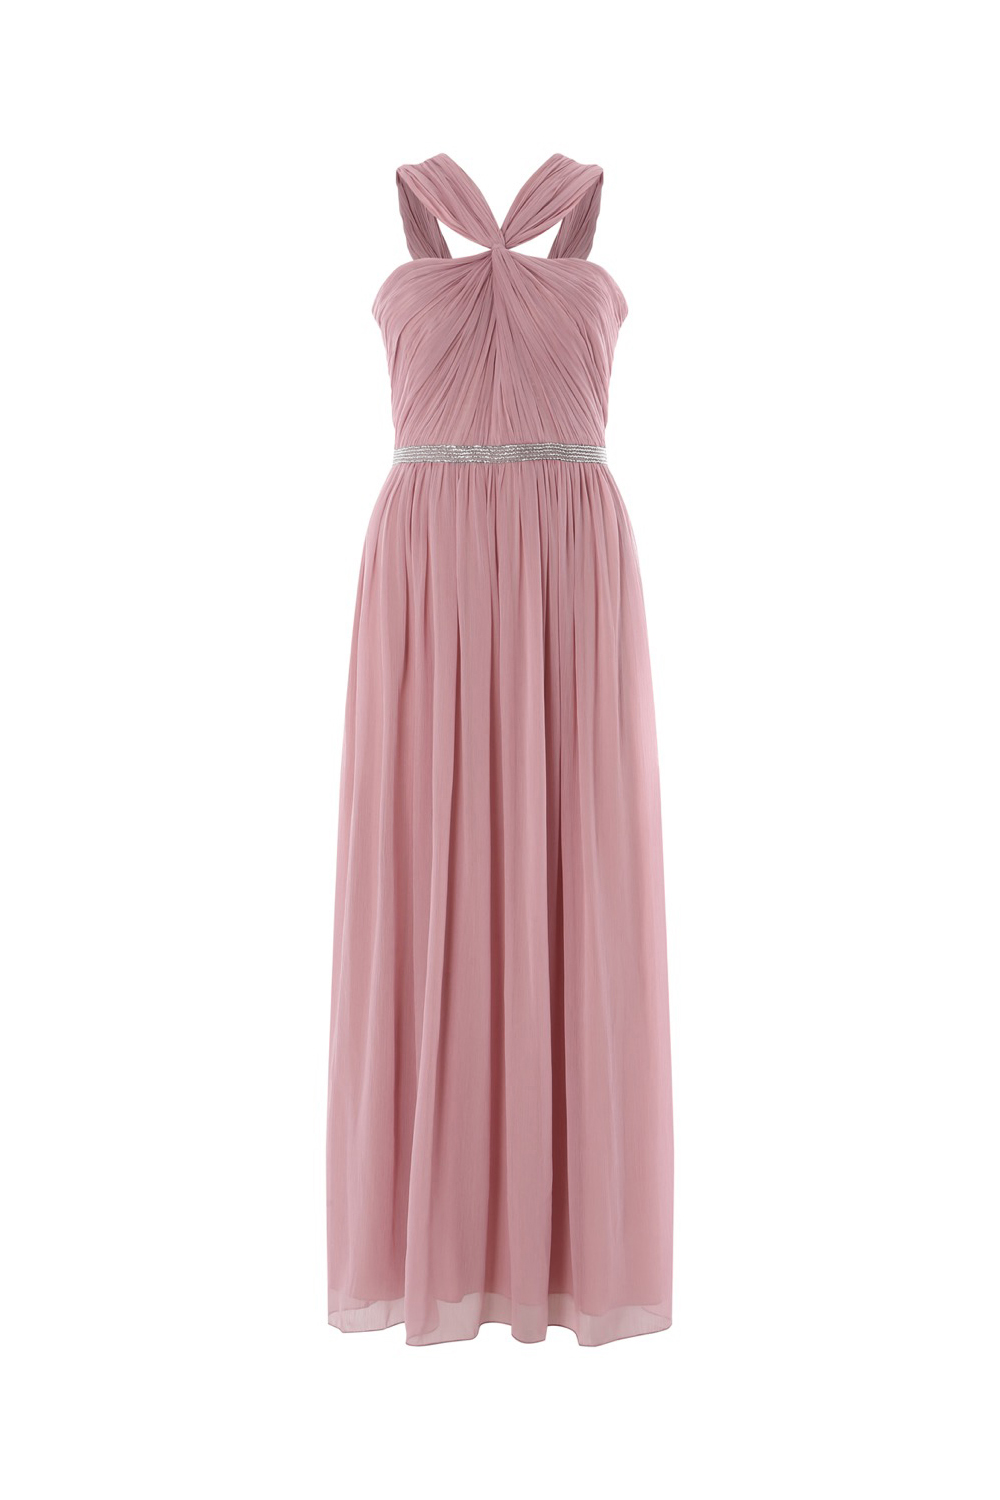 Rose Bead Embellished Maxi Dress, Image 4 of 4